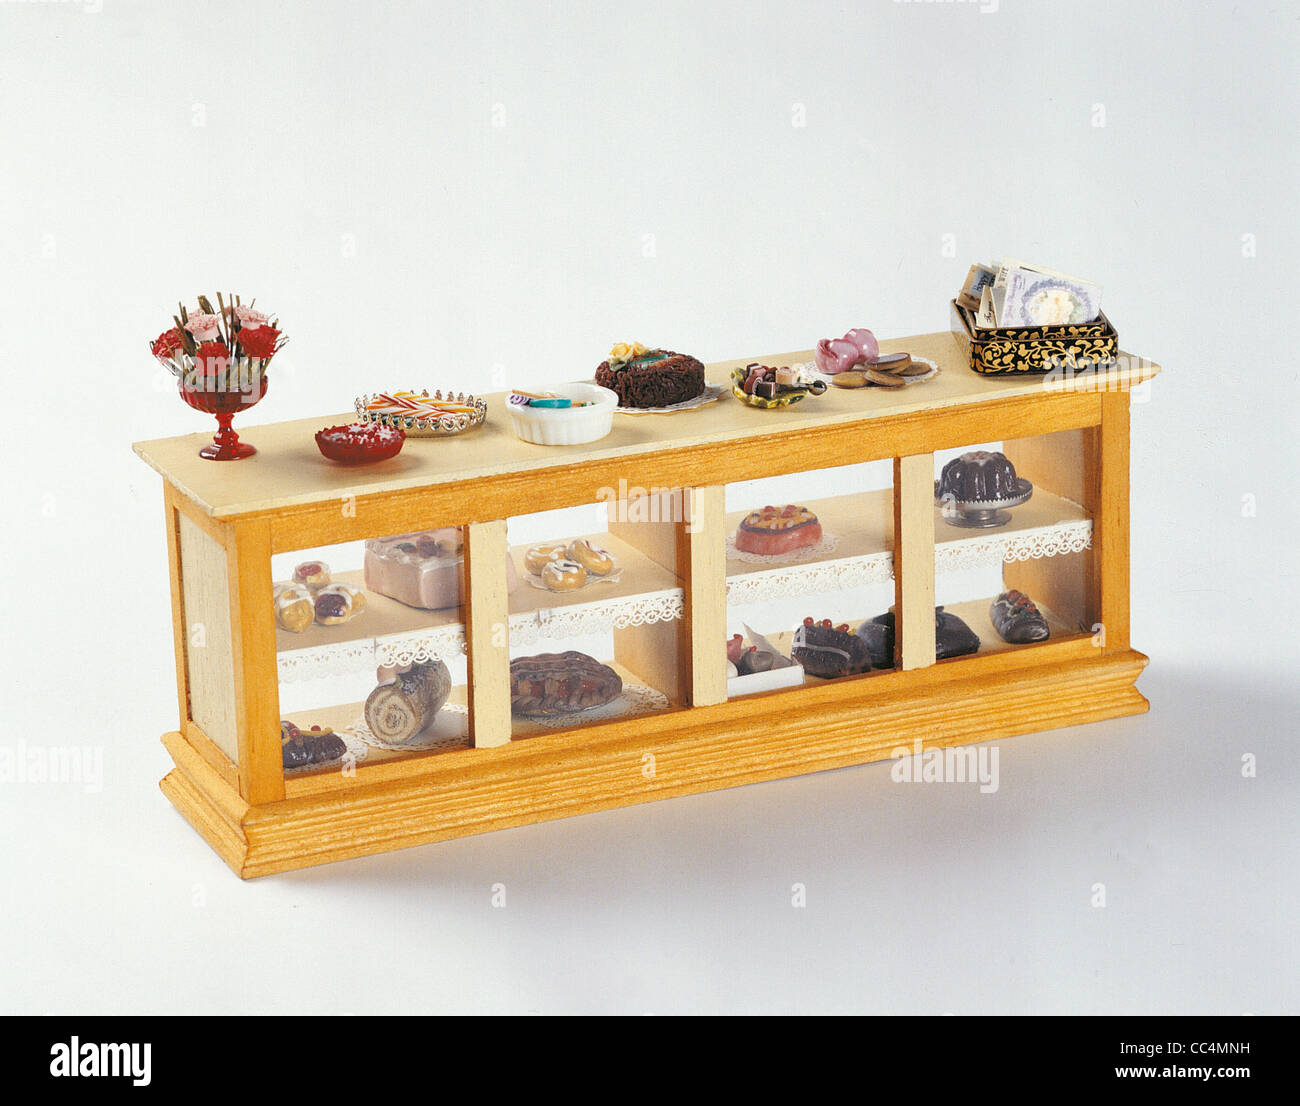 La raccolta: Negozi in miniatura in pasticceria L'Atelier du Jouet  particolare Paulette Foto stock - Alamy